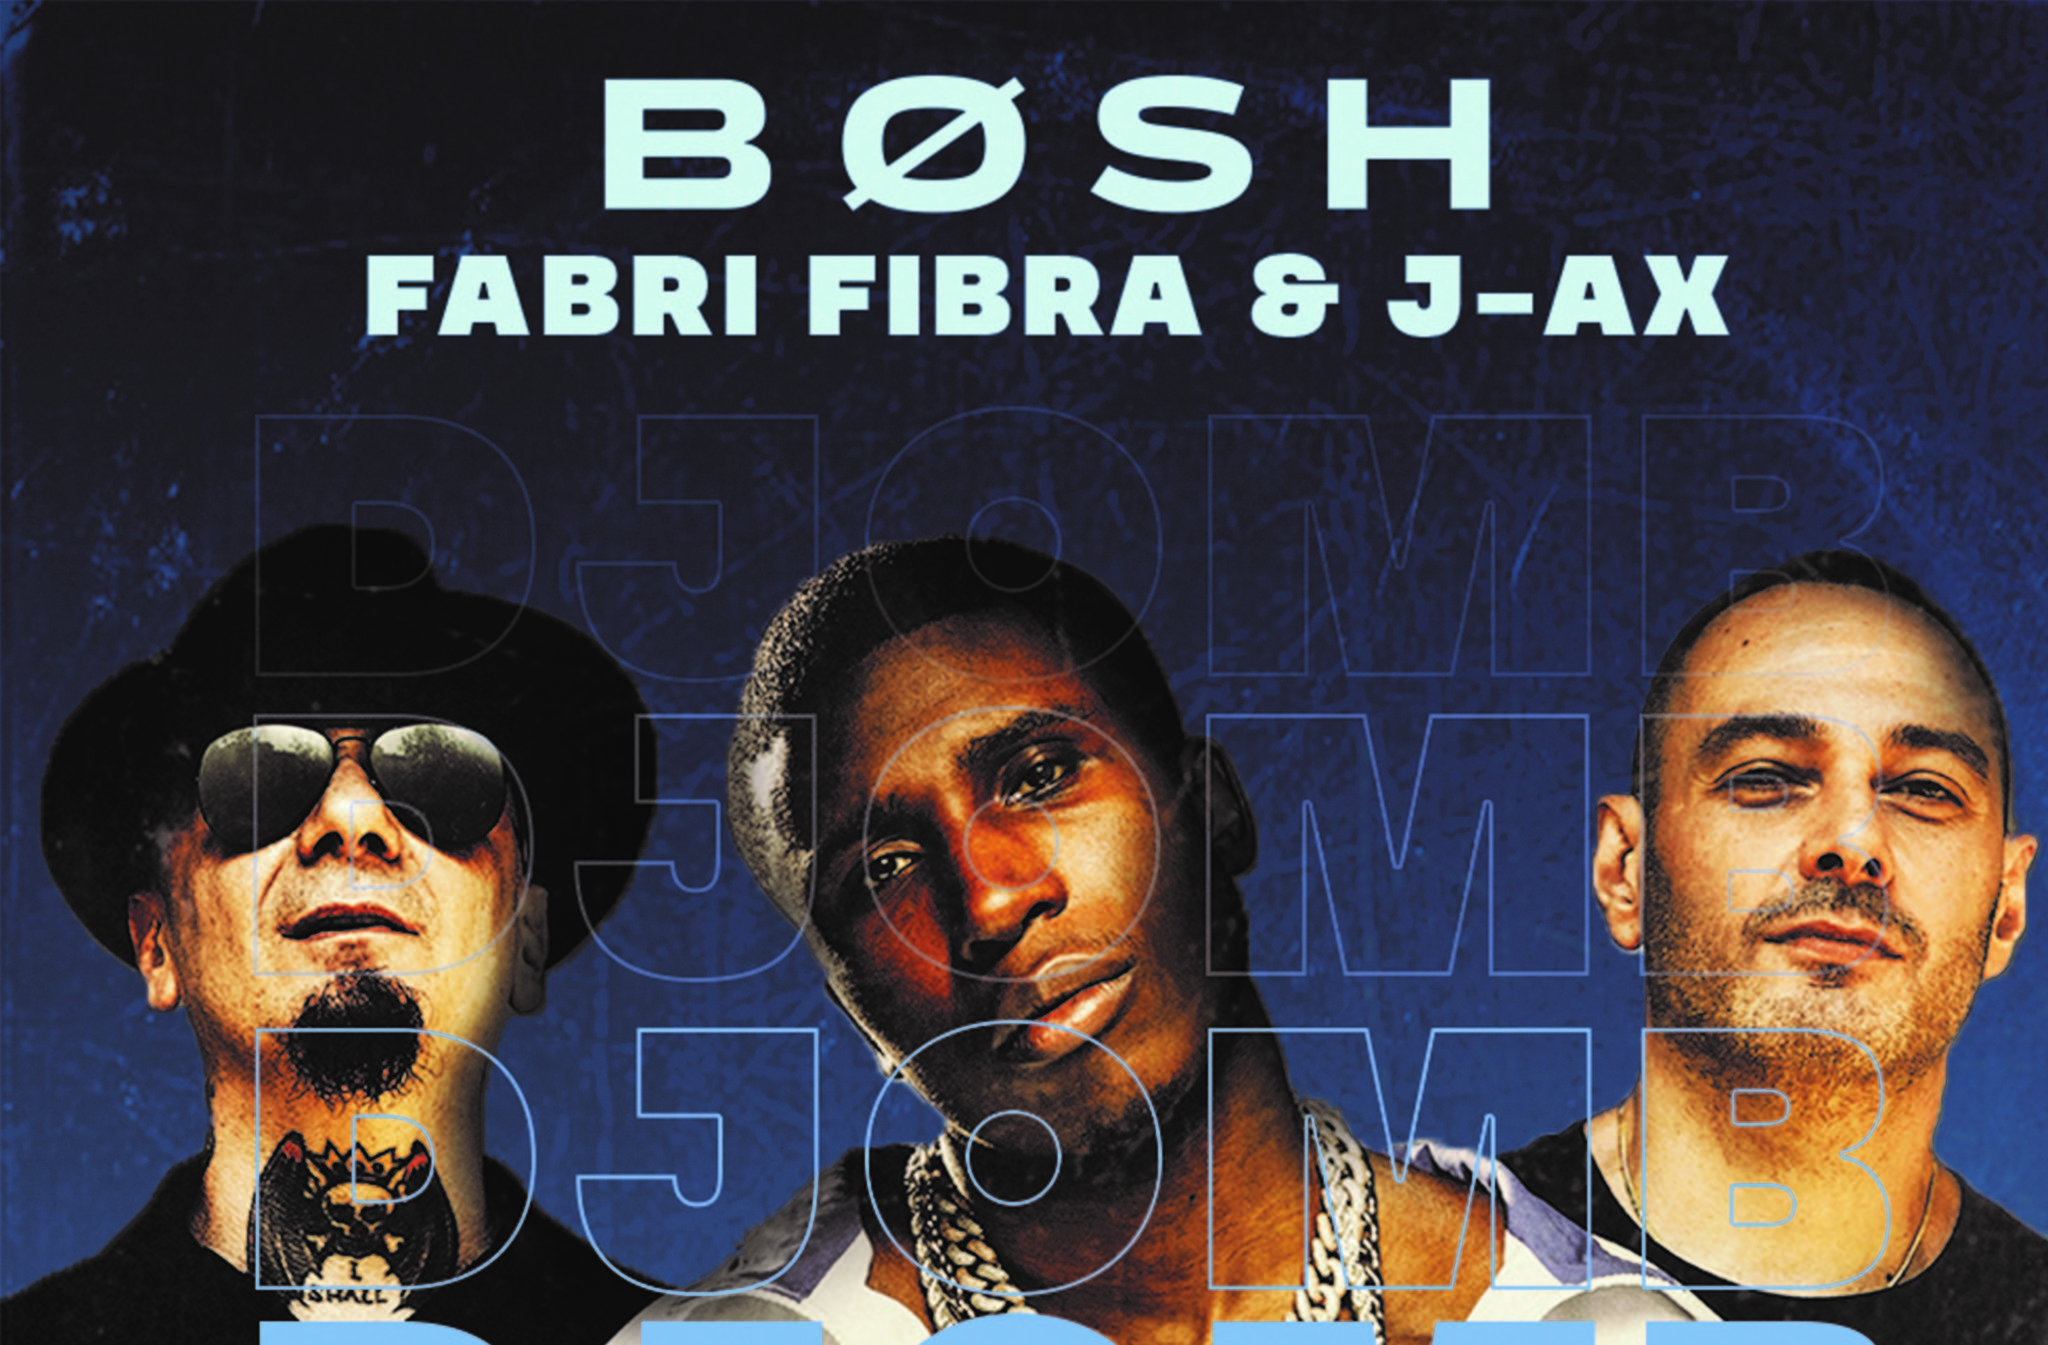 Fabri Fibra e J-Ax per la prima volta insieme in collaborazione con Bosh